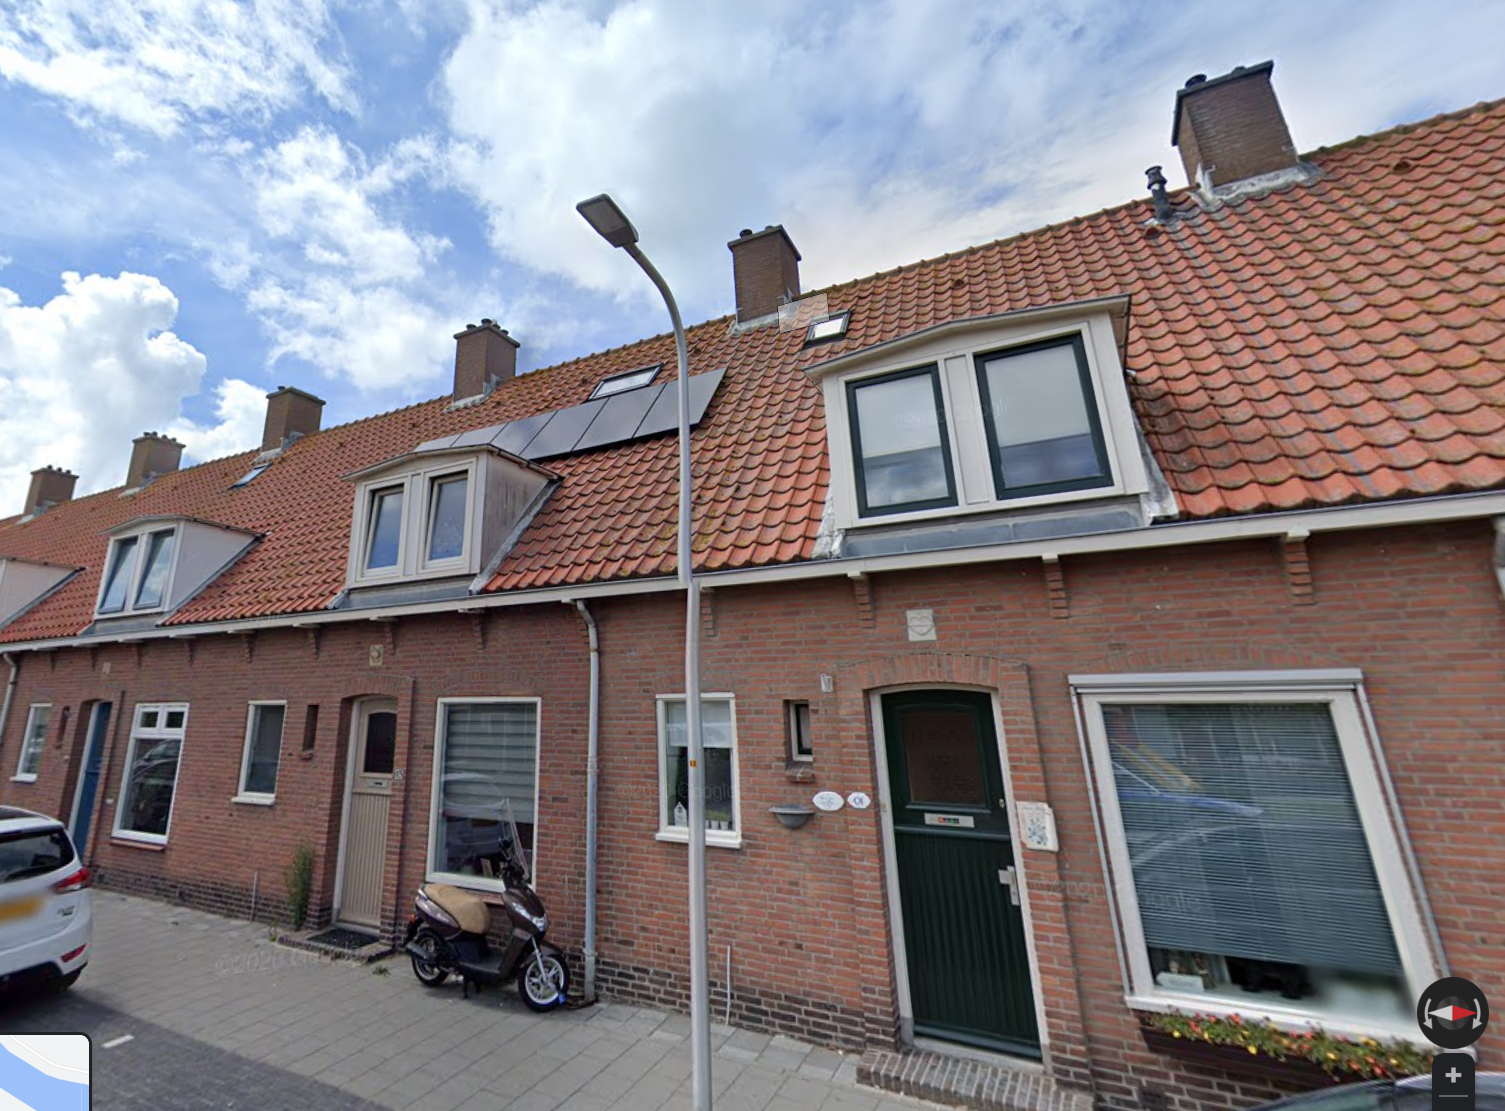 Rijnmond 91, 2225 VP Katwijk aan Zee, Nederland